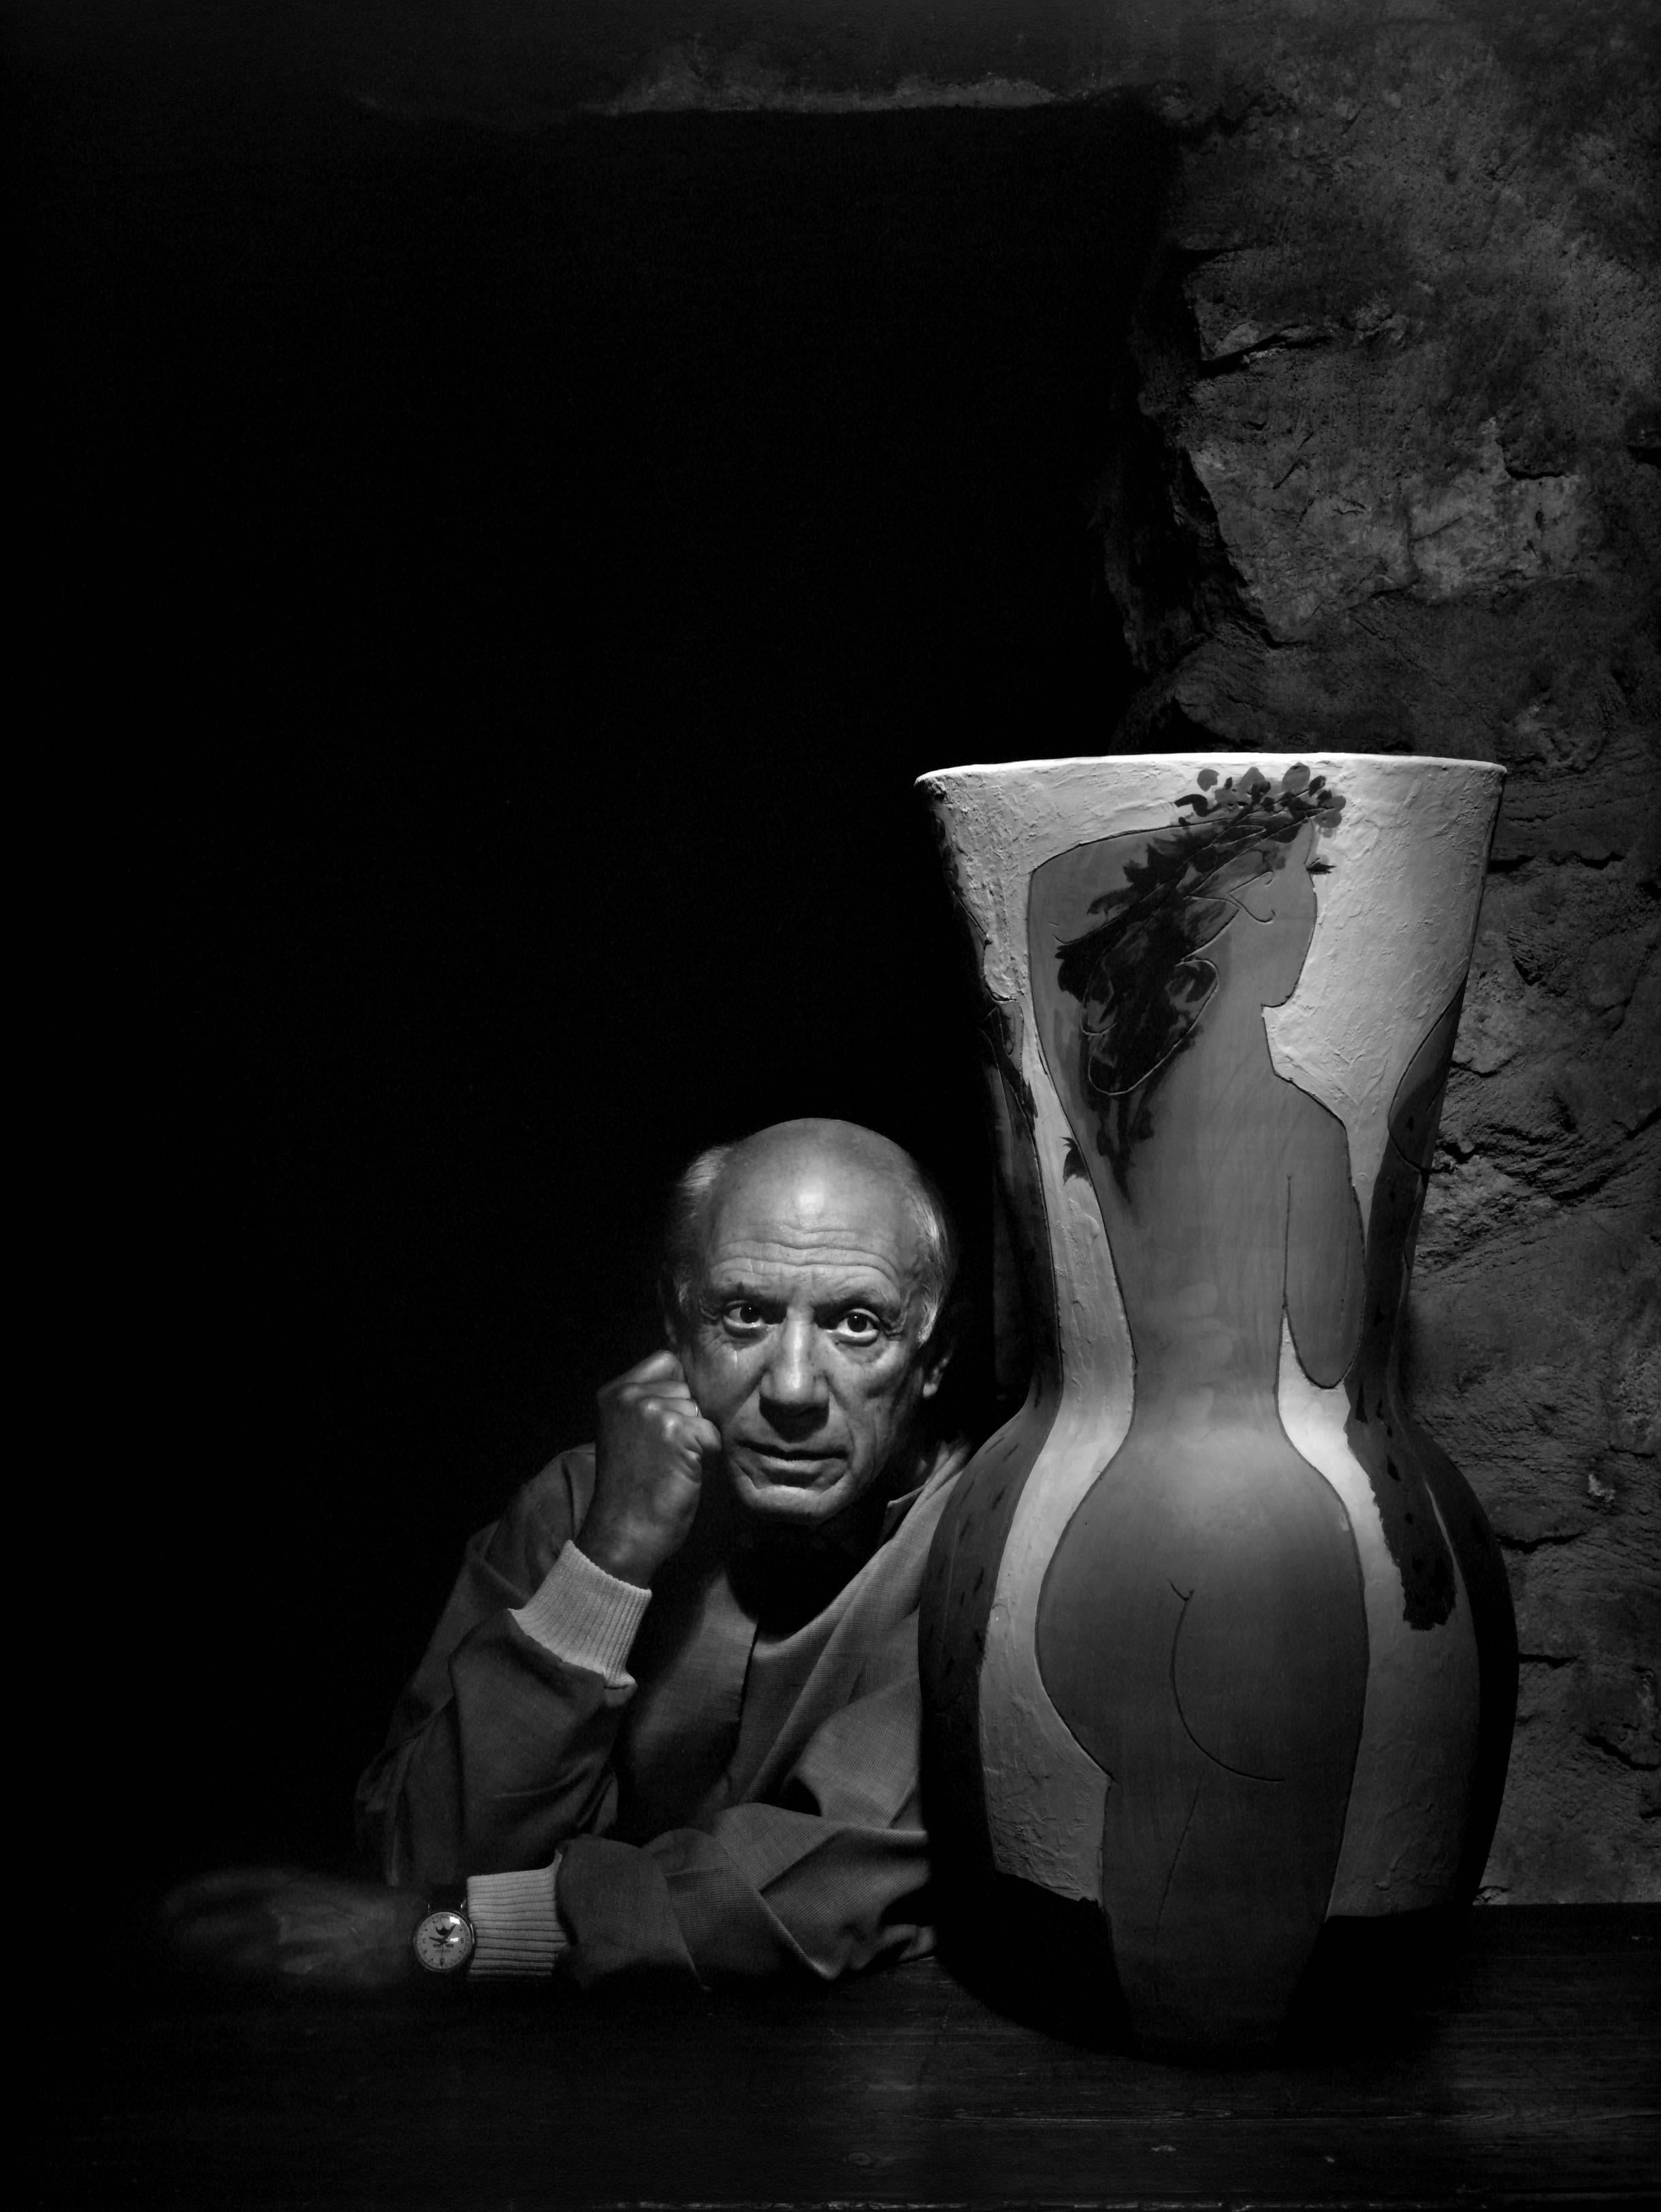 Pablo Picasso, 1954 - Yousuf Karsh (Fotografía de retrato)
Firmado en la montura
Impresión en gelatina de plata, montada sobre cartulina, impresa por el artista o bajo su supervisión directa
38 3/4 x 29 1/2 pulgadas
Procedencia: Patrimonio de Yousuf